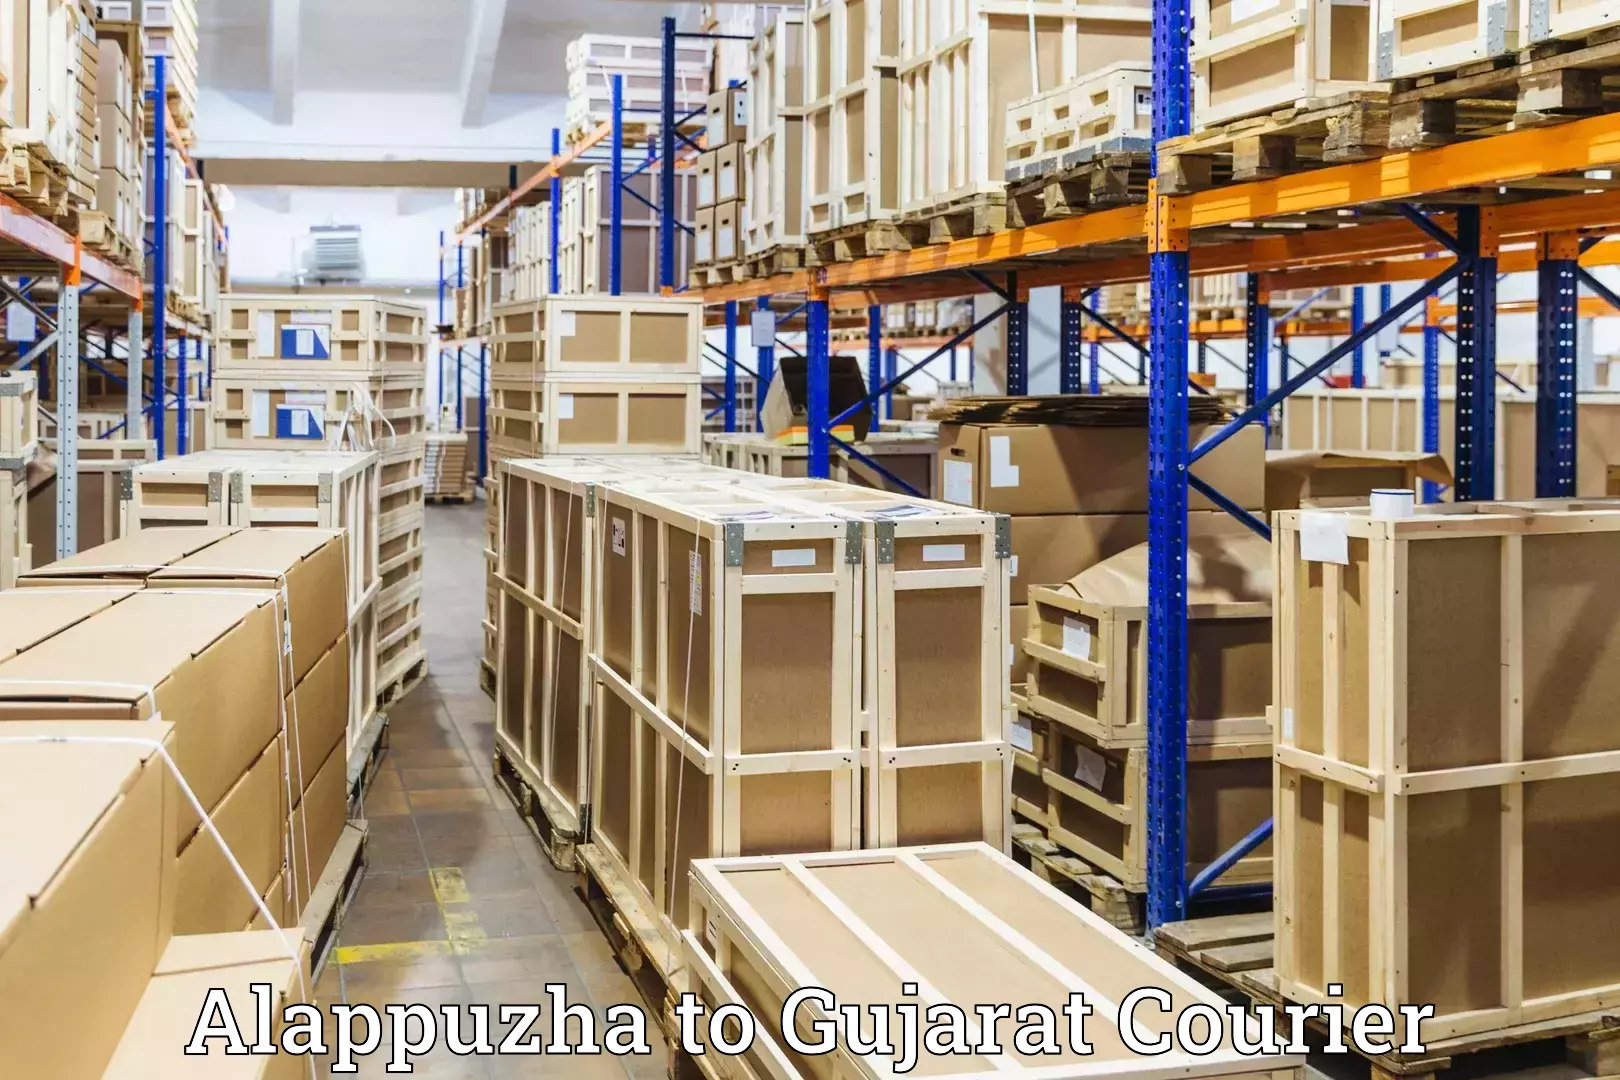 Luggage shipment specialists Alappuzha to Jasdan